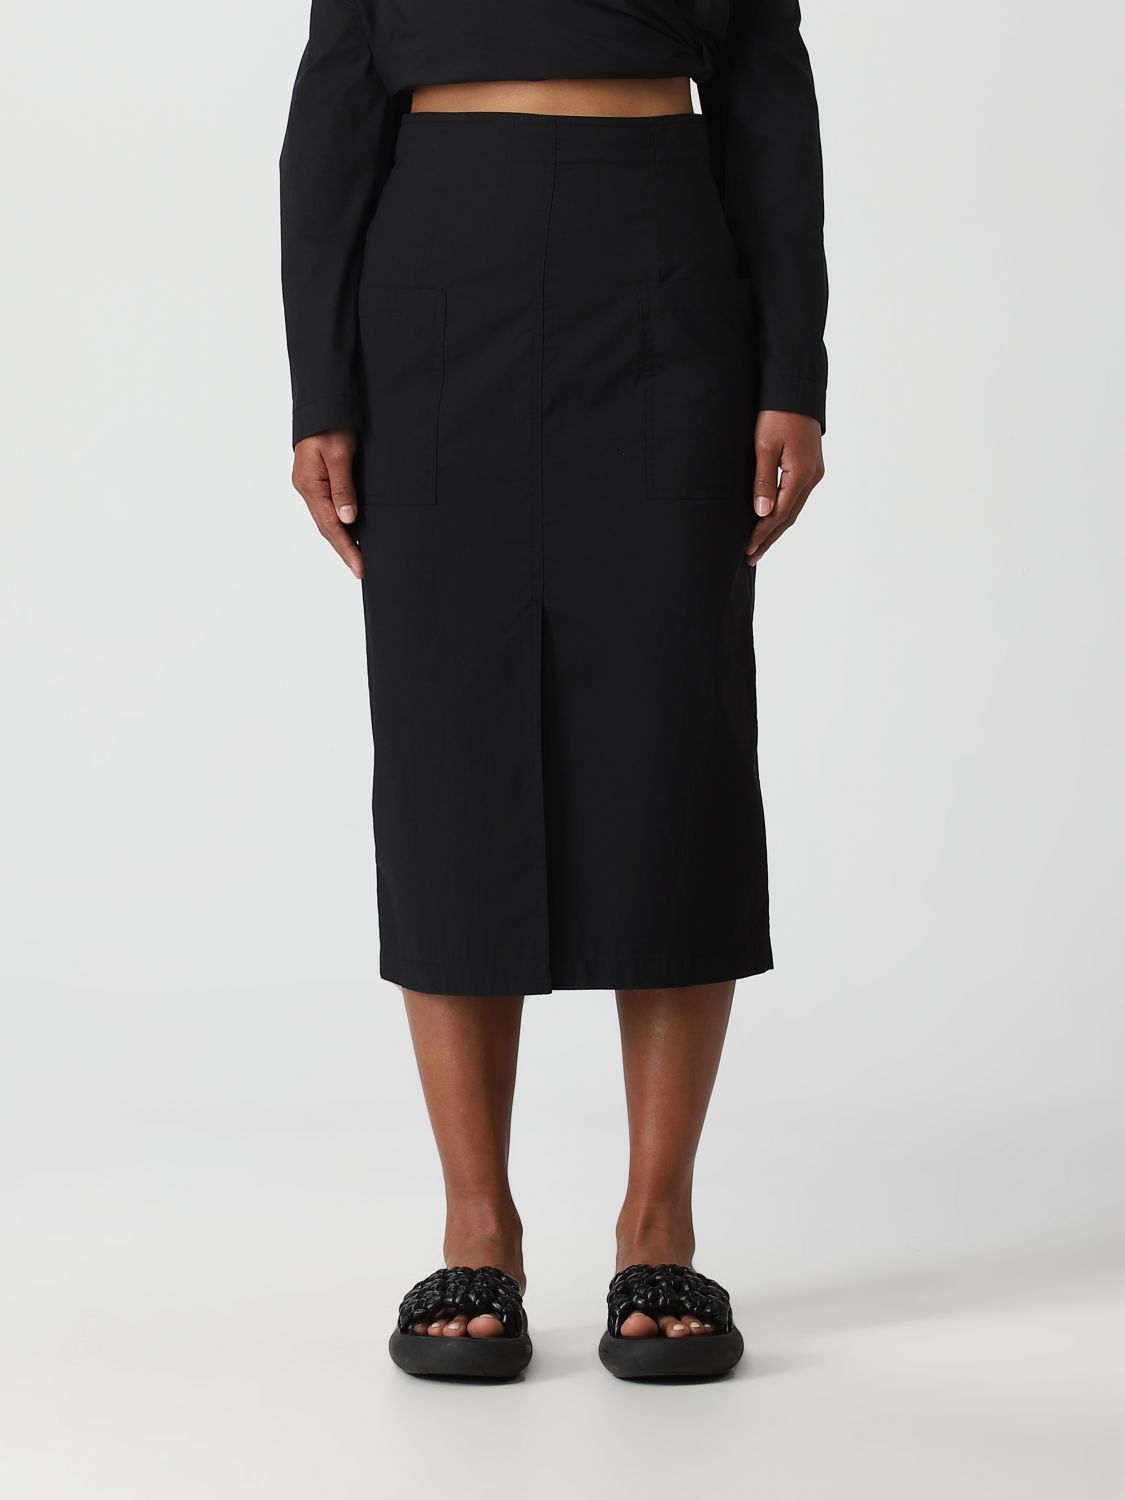 Alessia Santi Skirt  Woman In Black